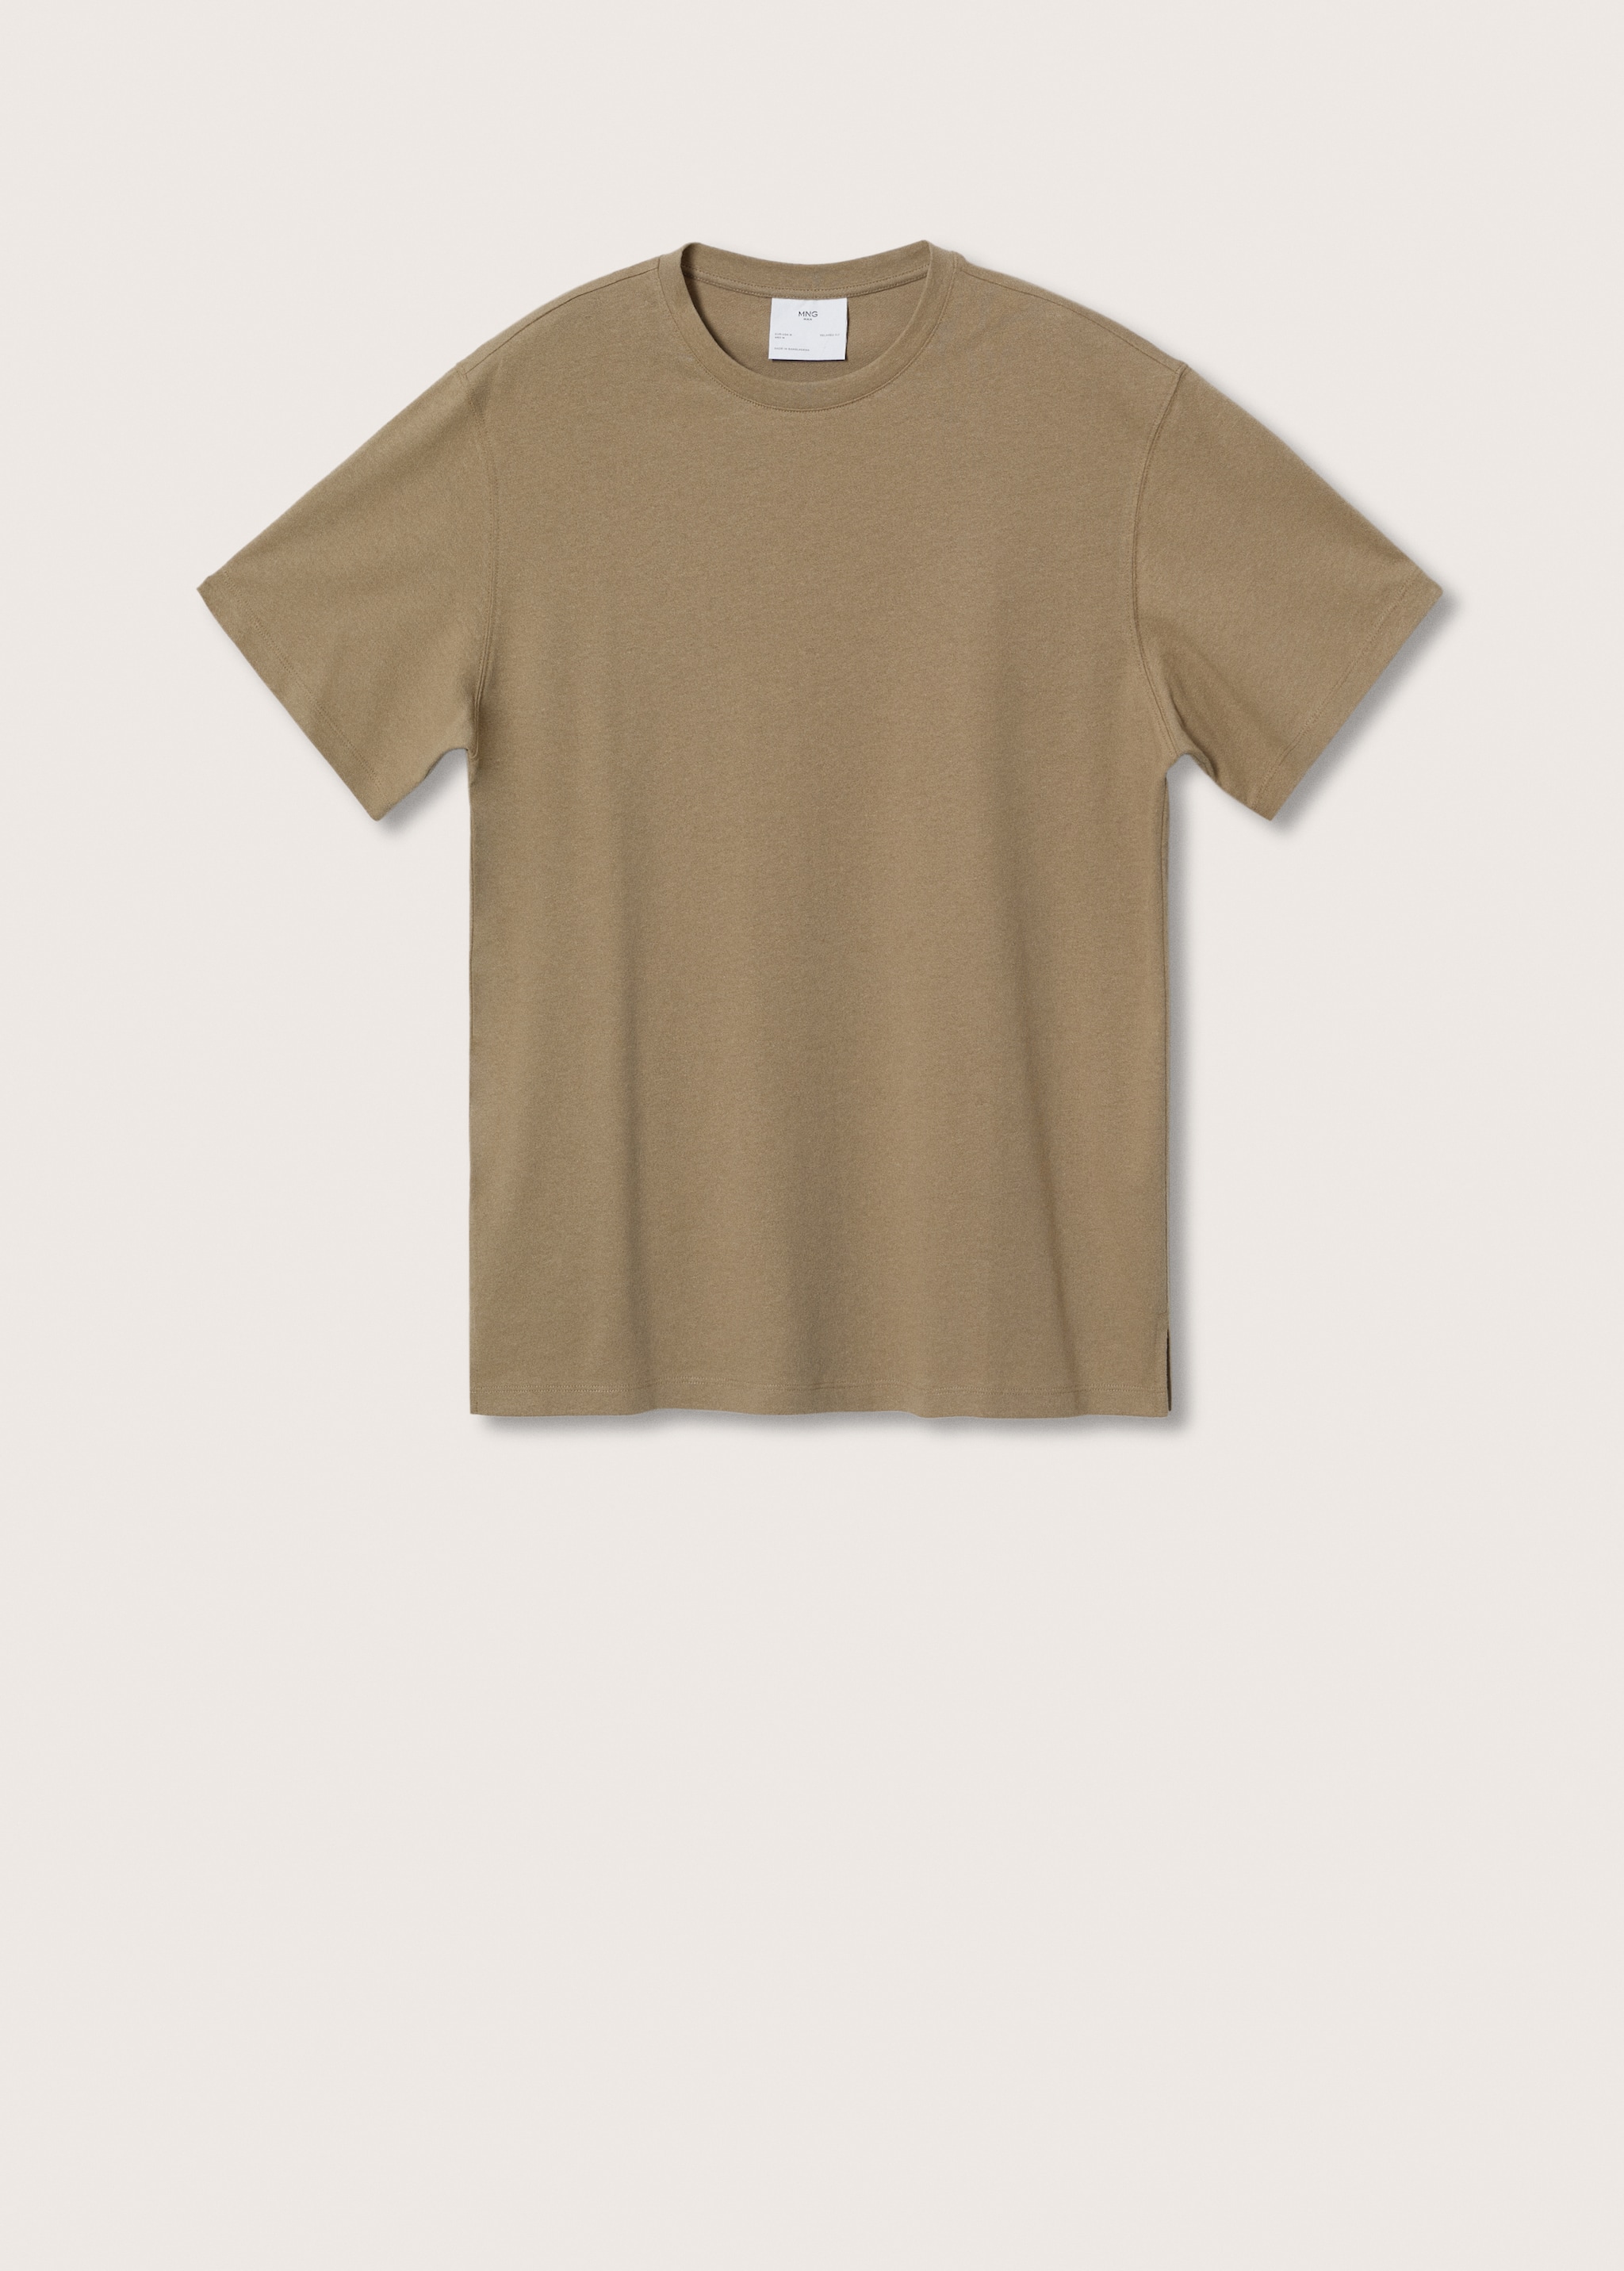 Camiseta algodón lino - Artículo sin modelo